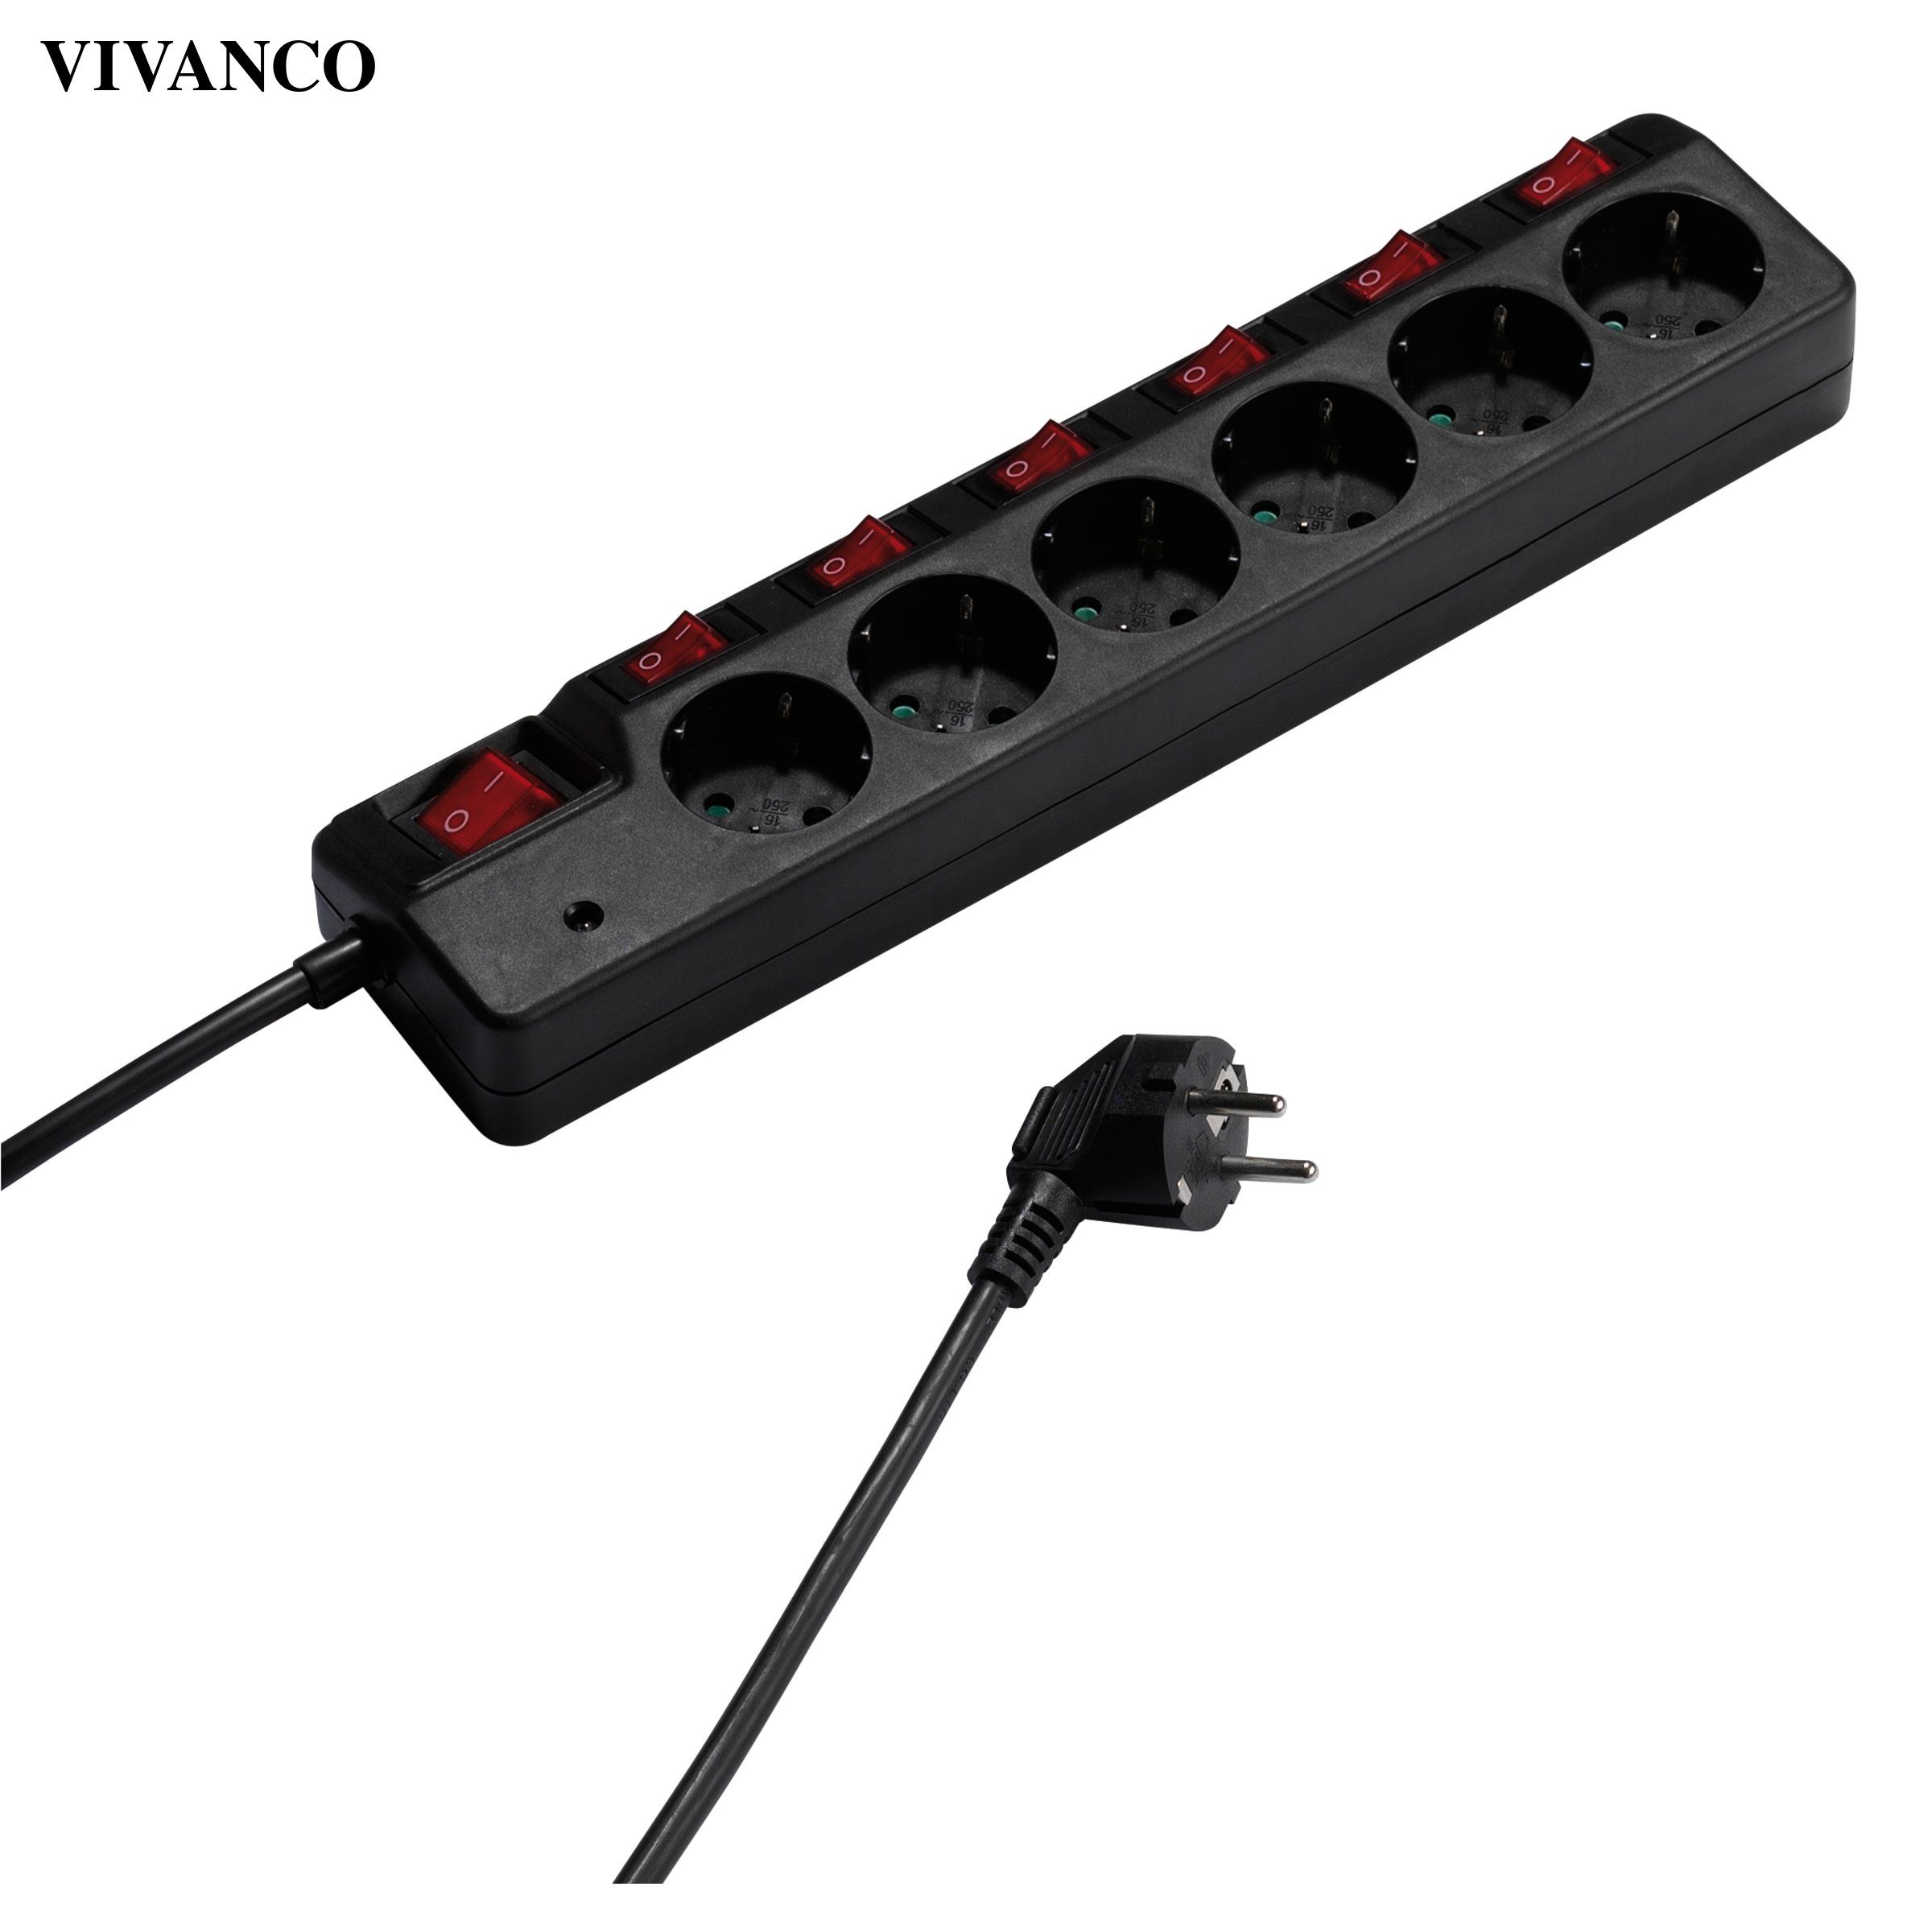 Vivanco Mehrfachsteckdose, 6 Fach Steckerleiste Schalter, mit 7 Berührungsschutz